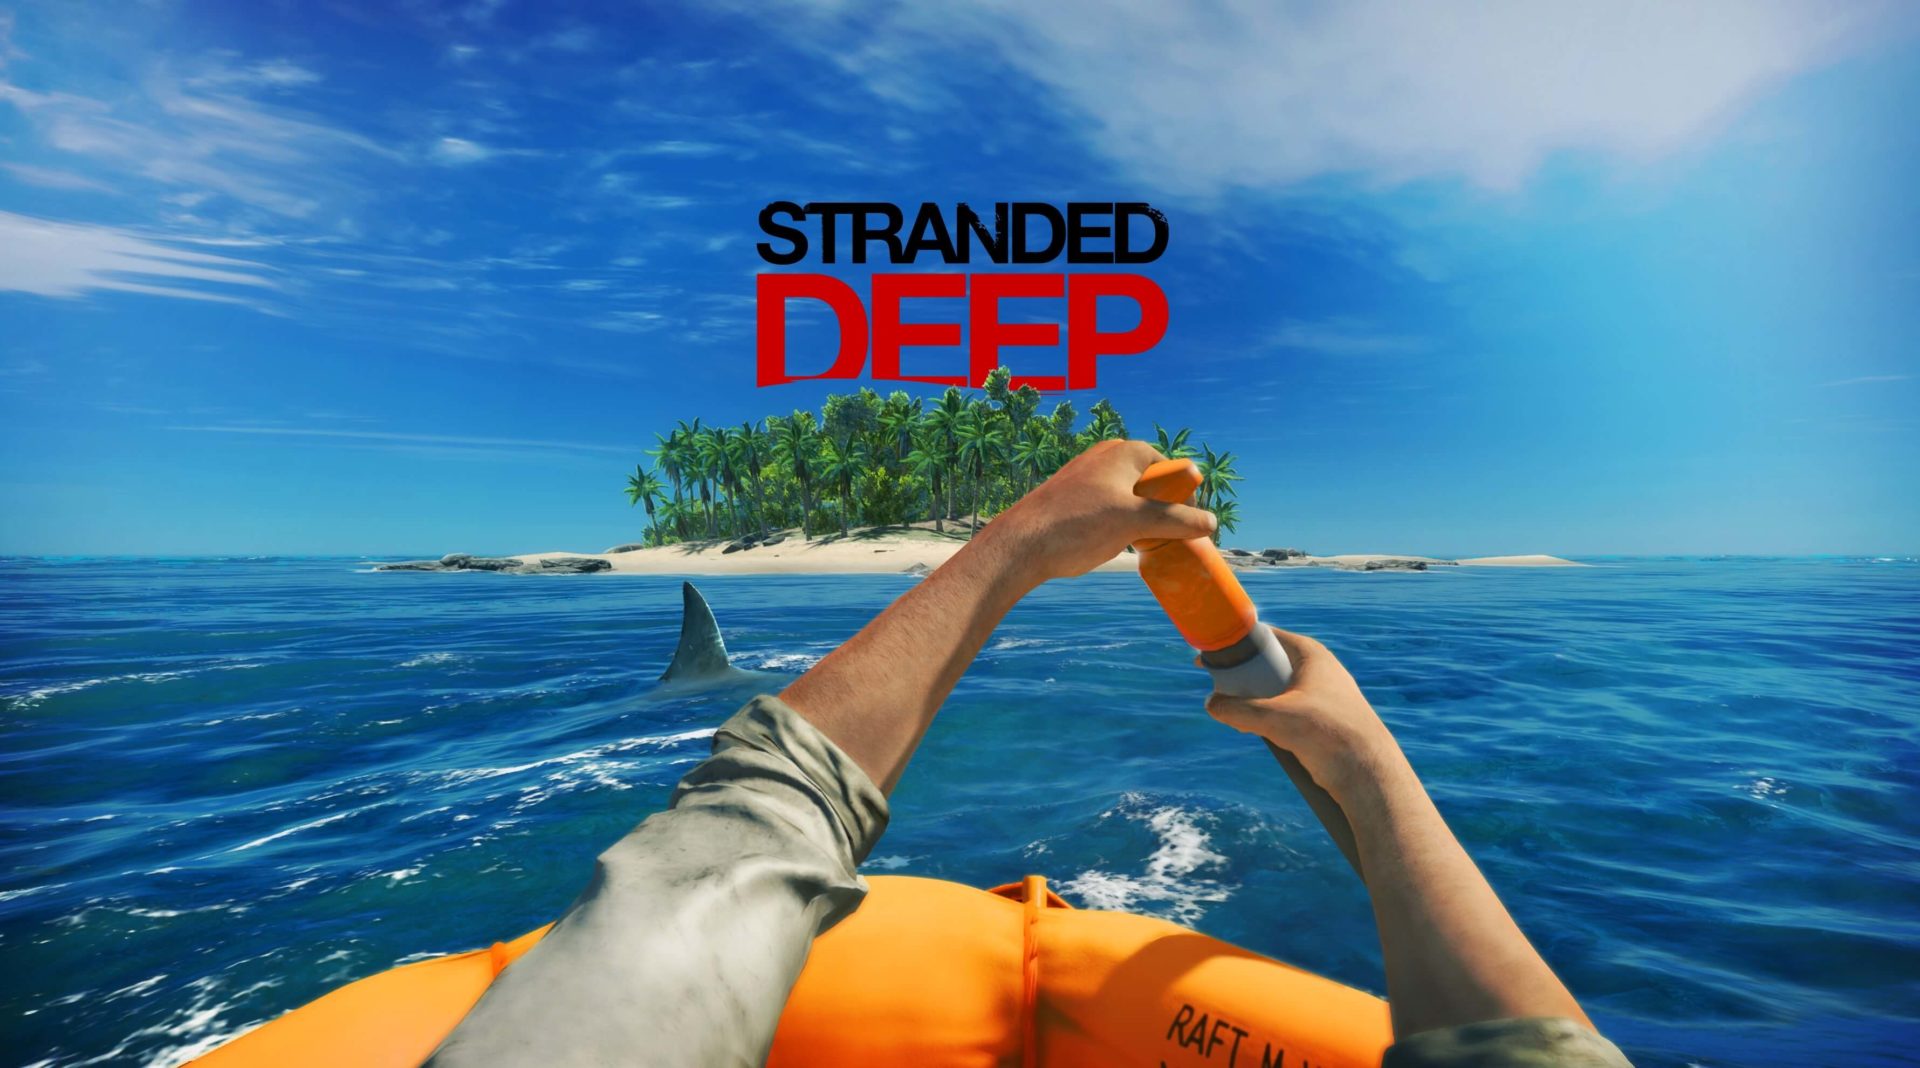 stranded-deep-une-date-de-sortie-pour-les-version-ps4-et-xbox-one